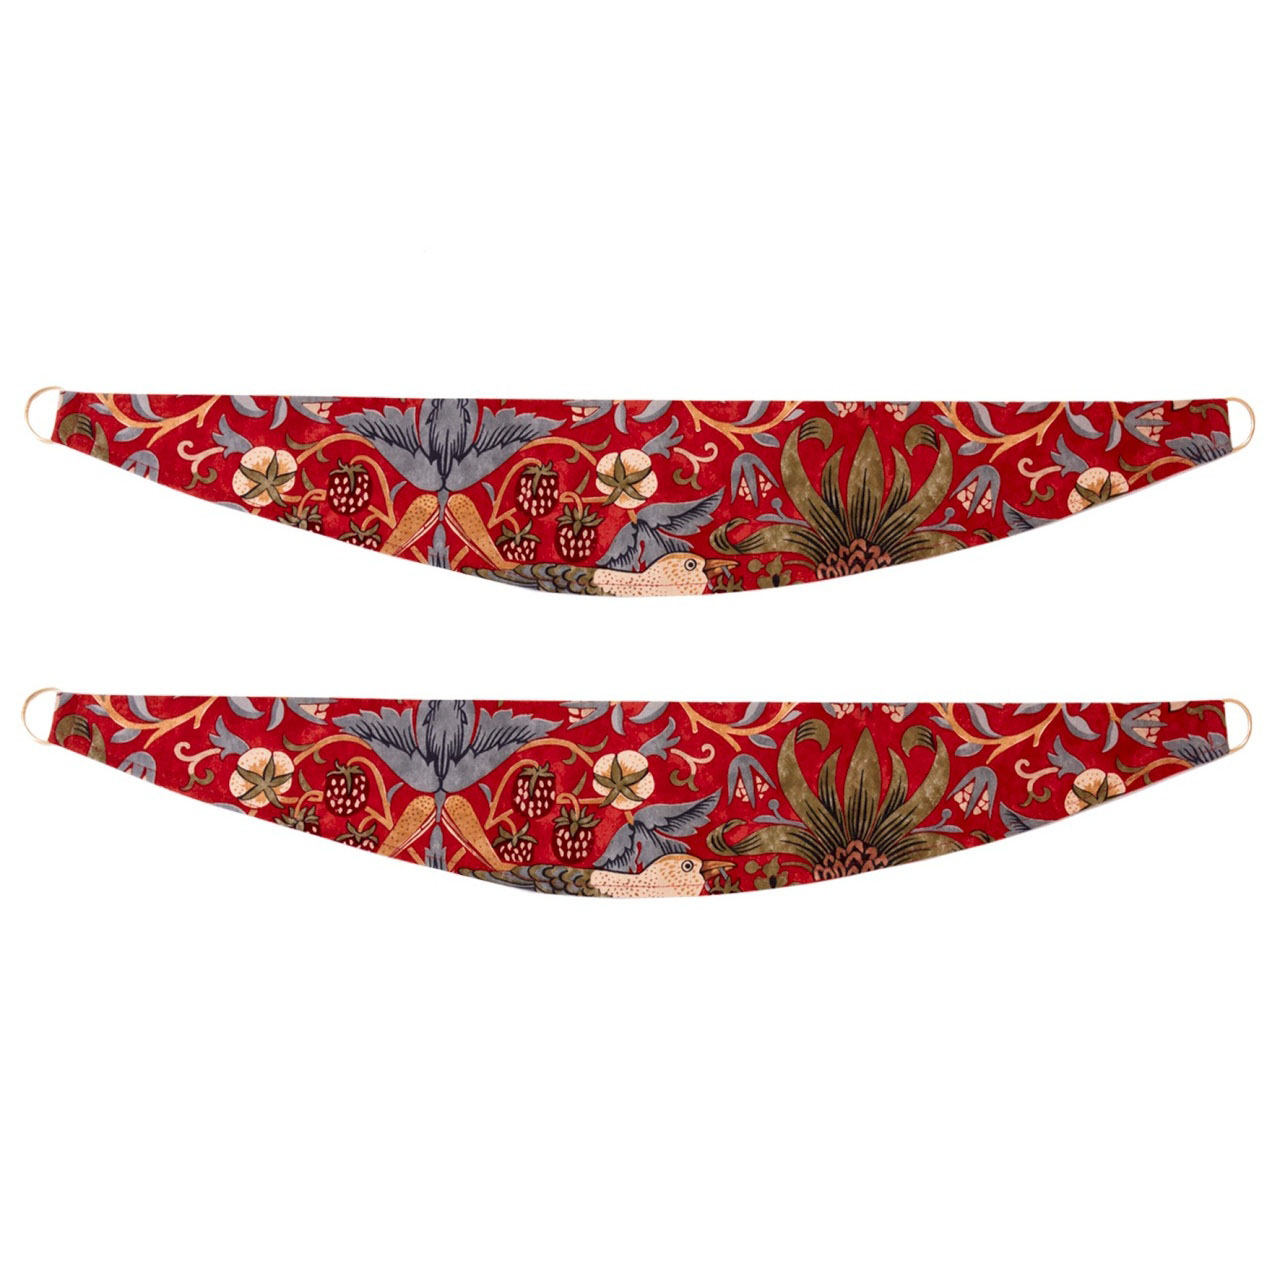 William Morris Tie-backs - Pair